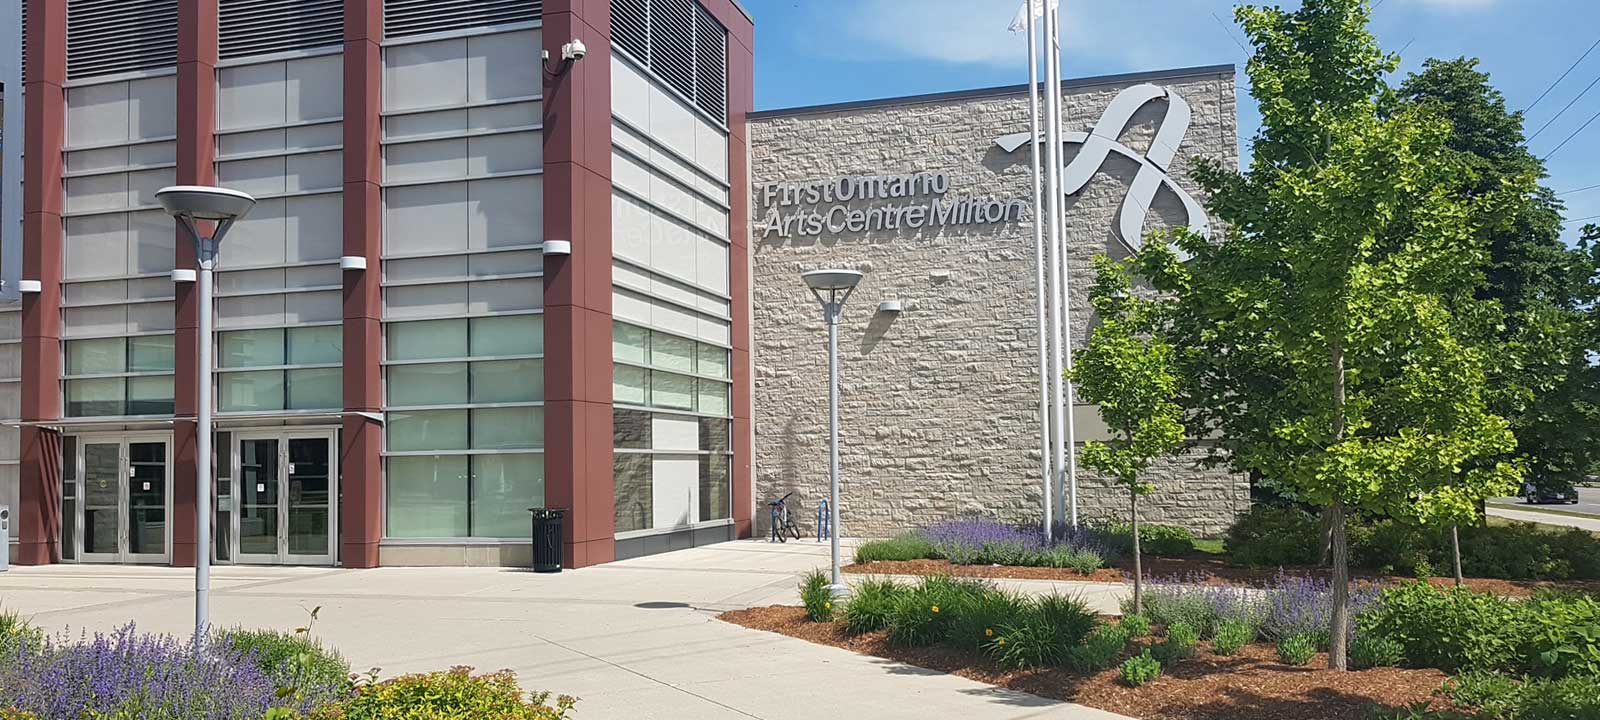 Exterior shot of FirstOntario Arts Centre Milton